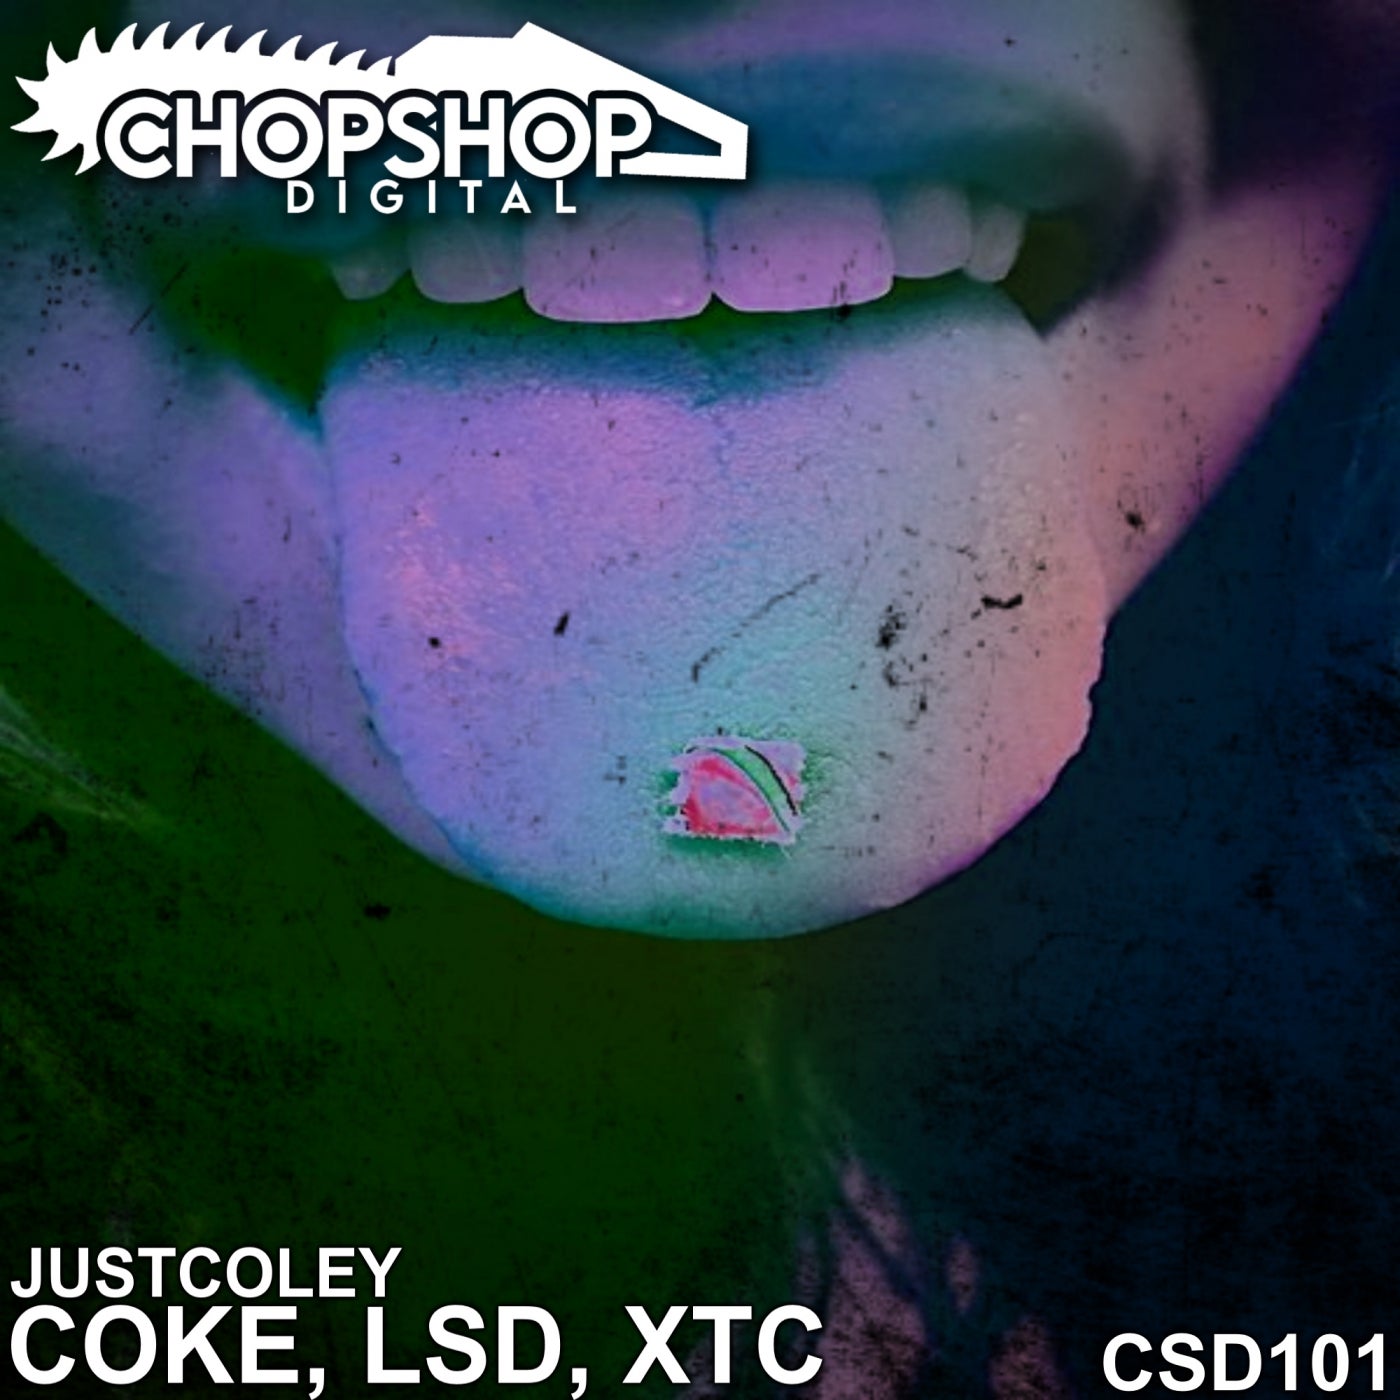 Coke, LSD, XTC